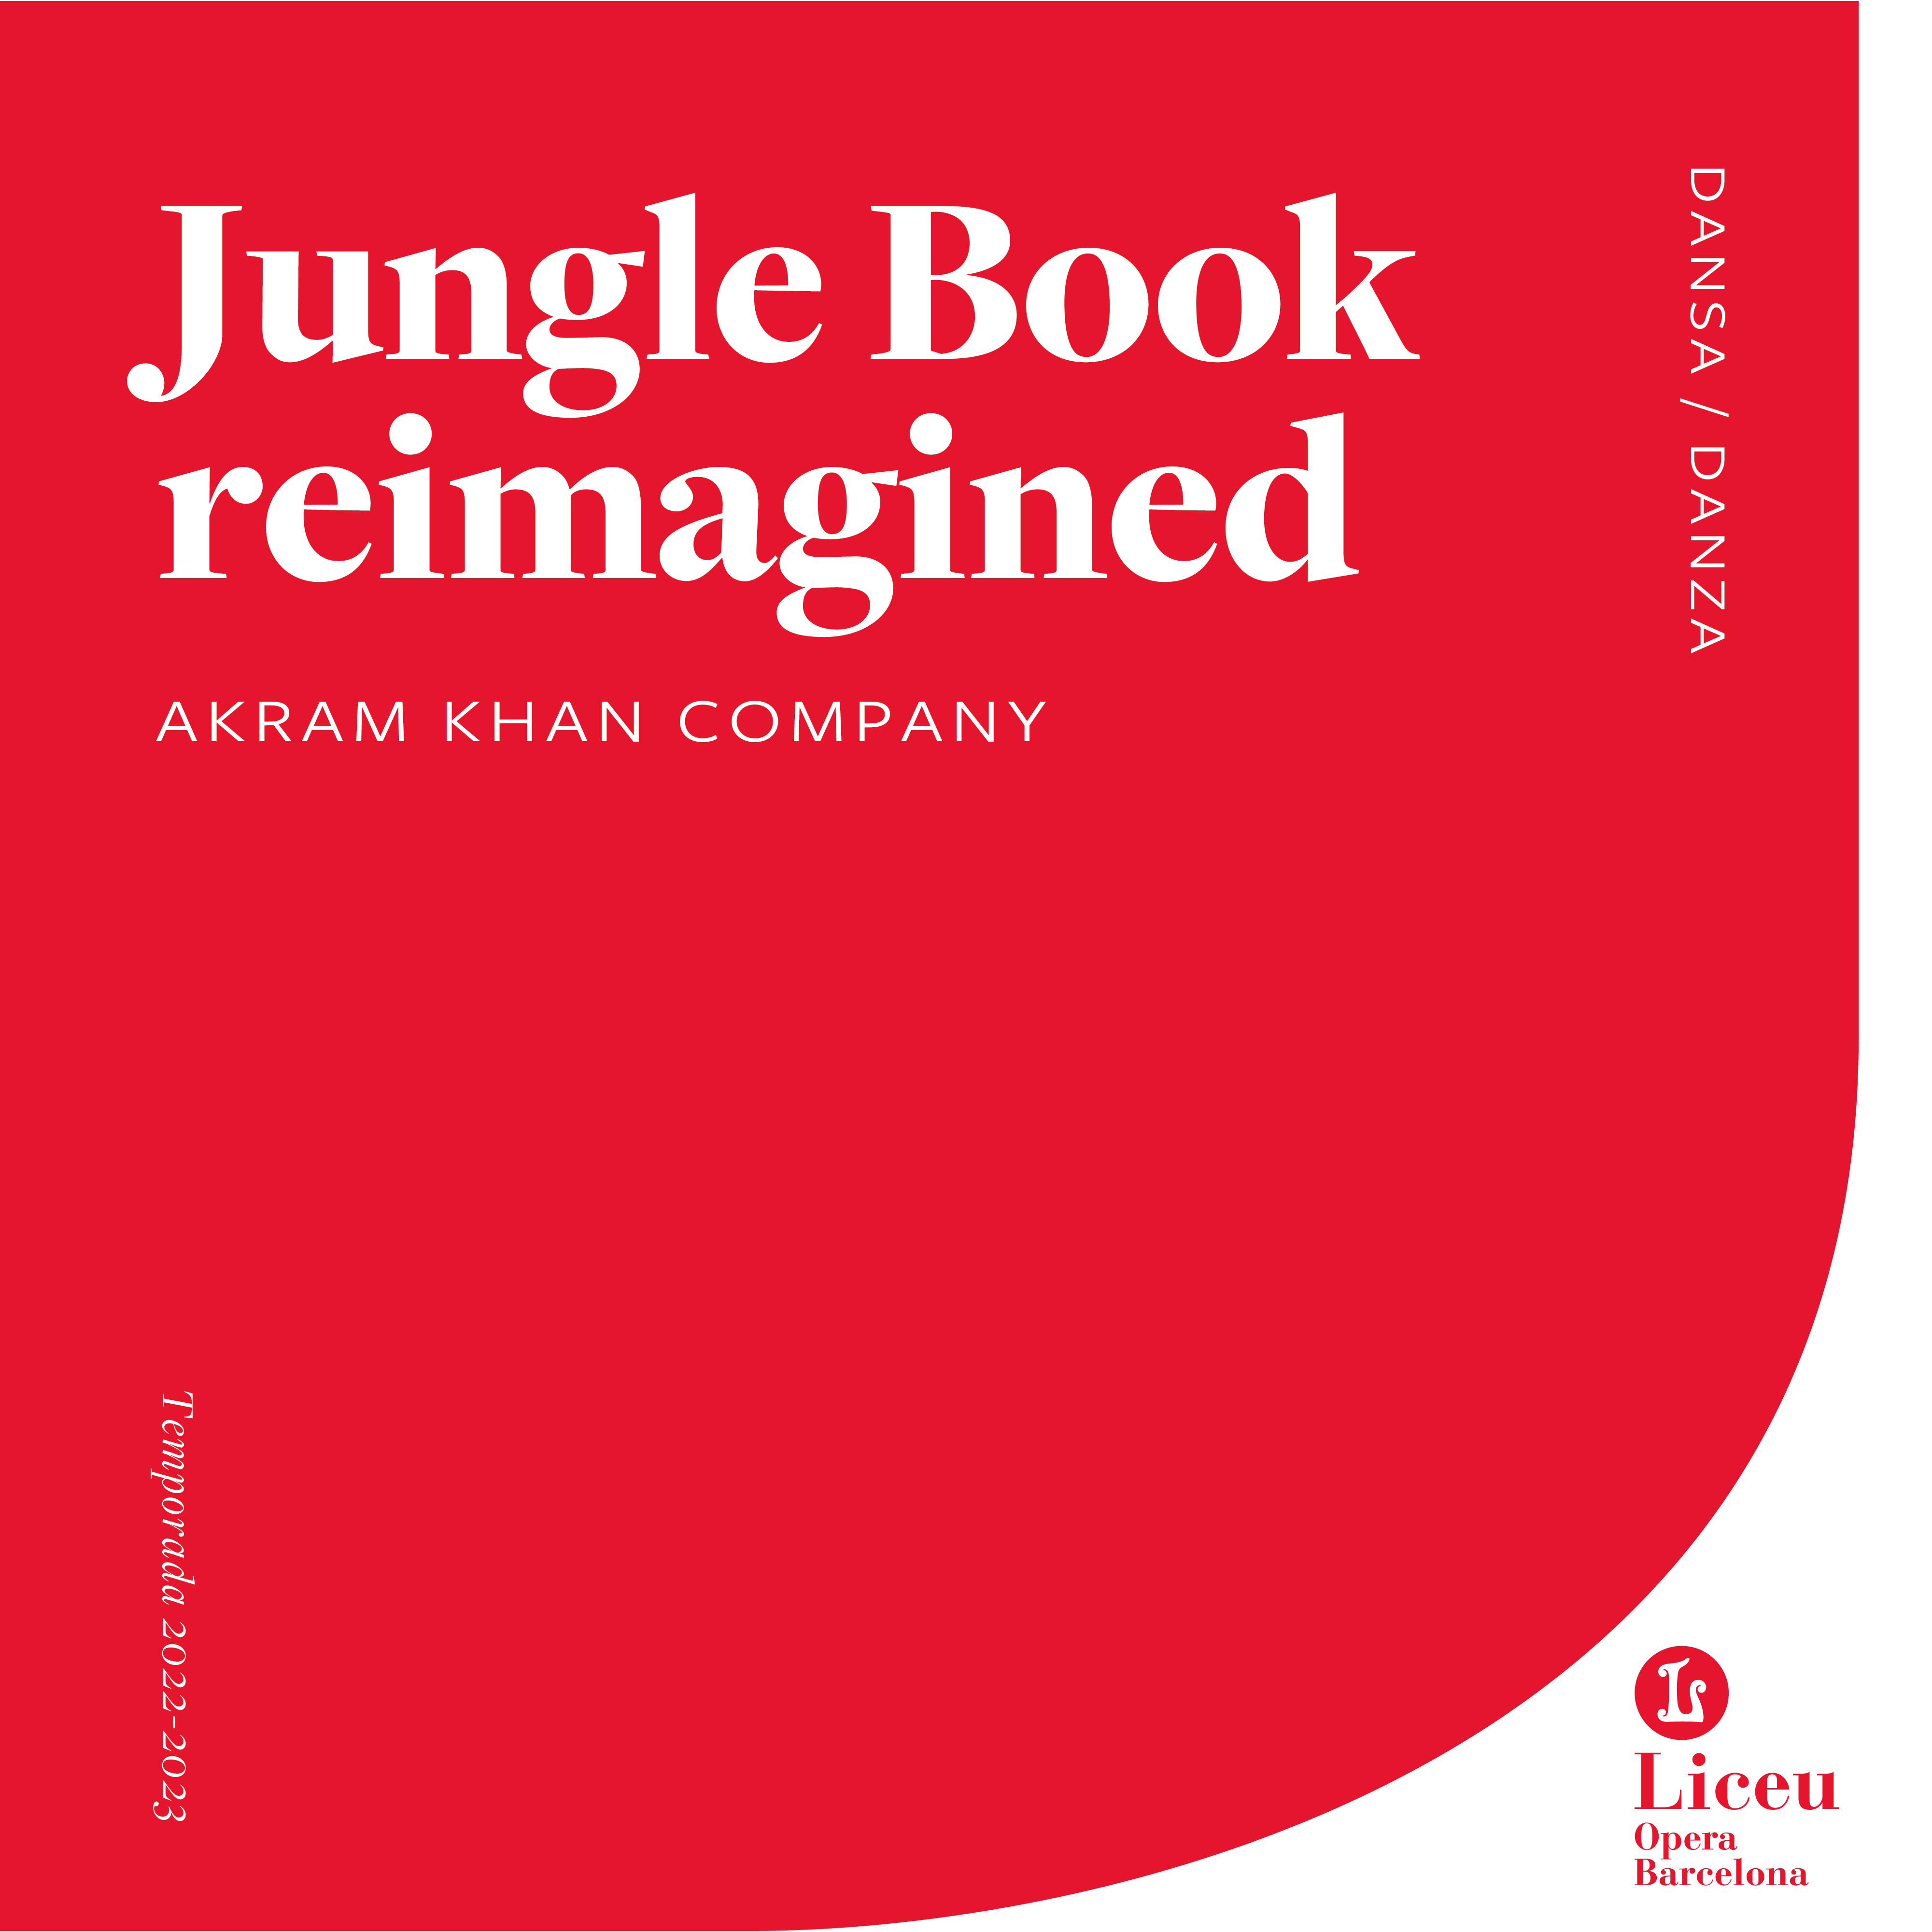 Jungle Book reimagined